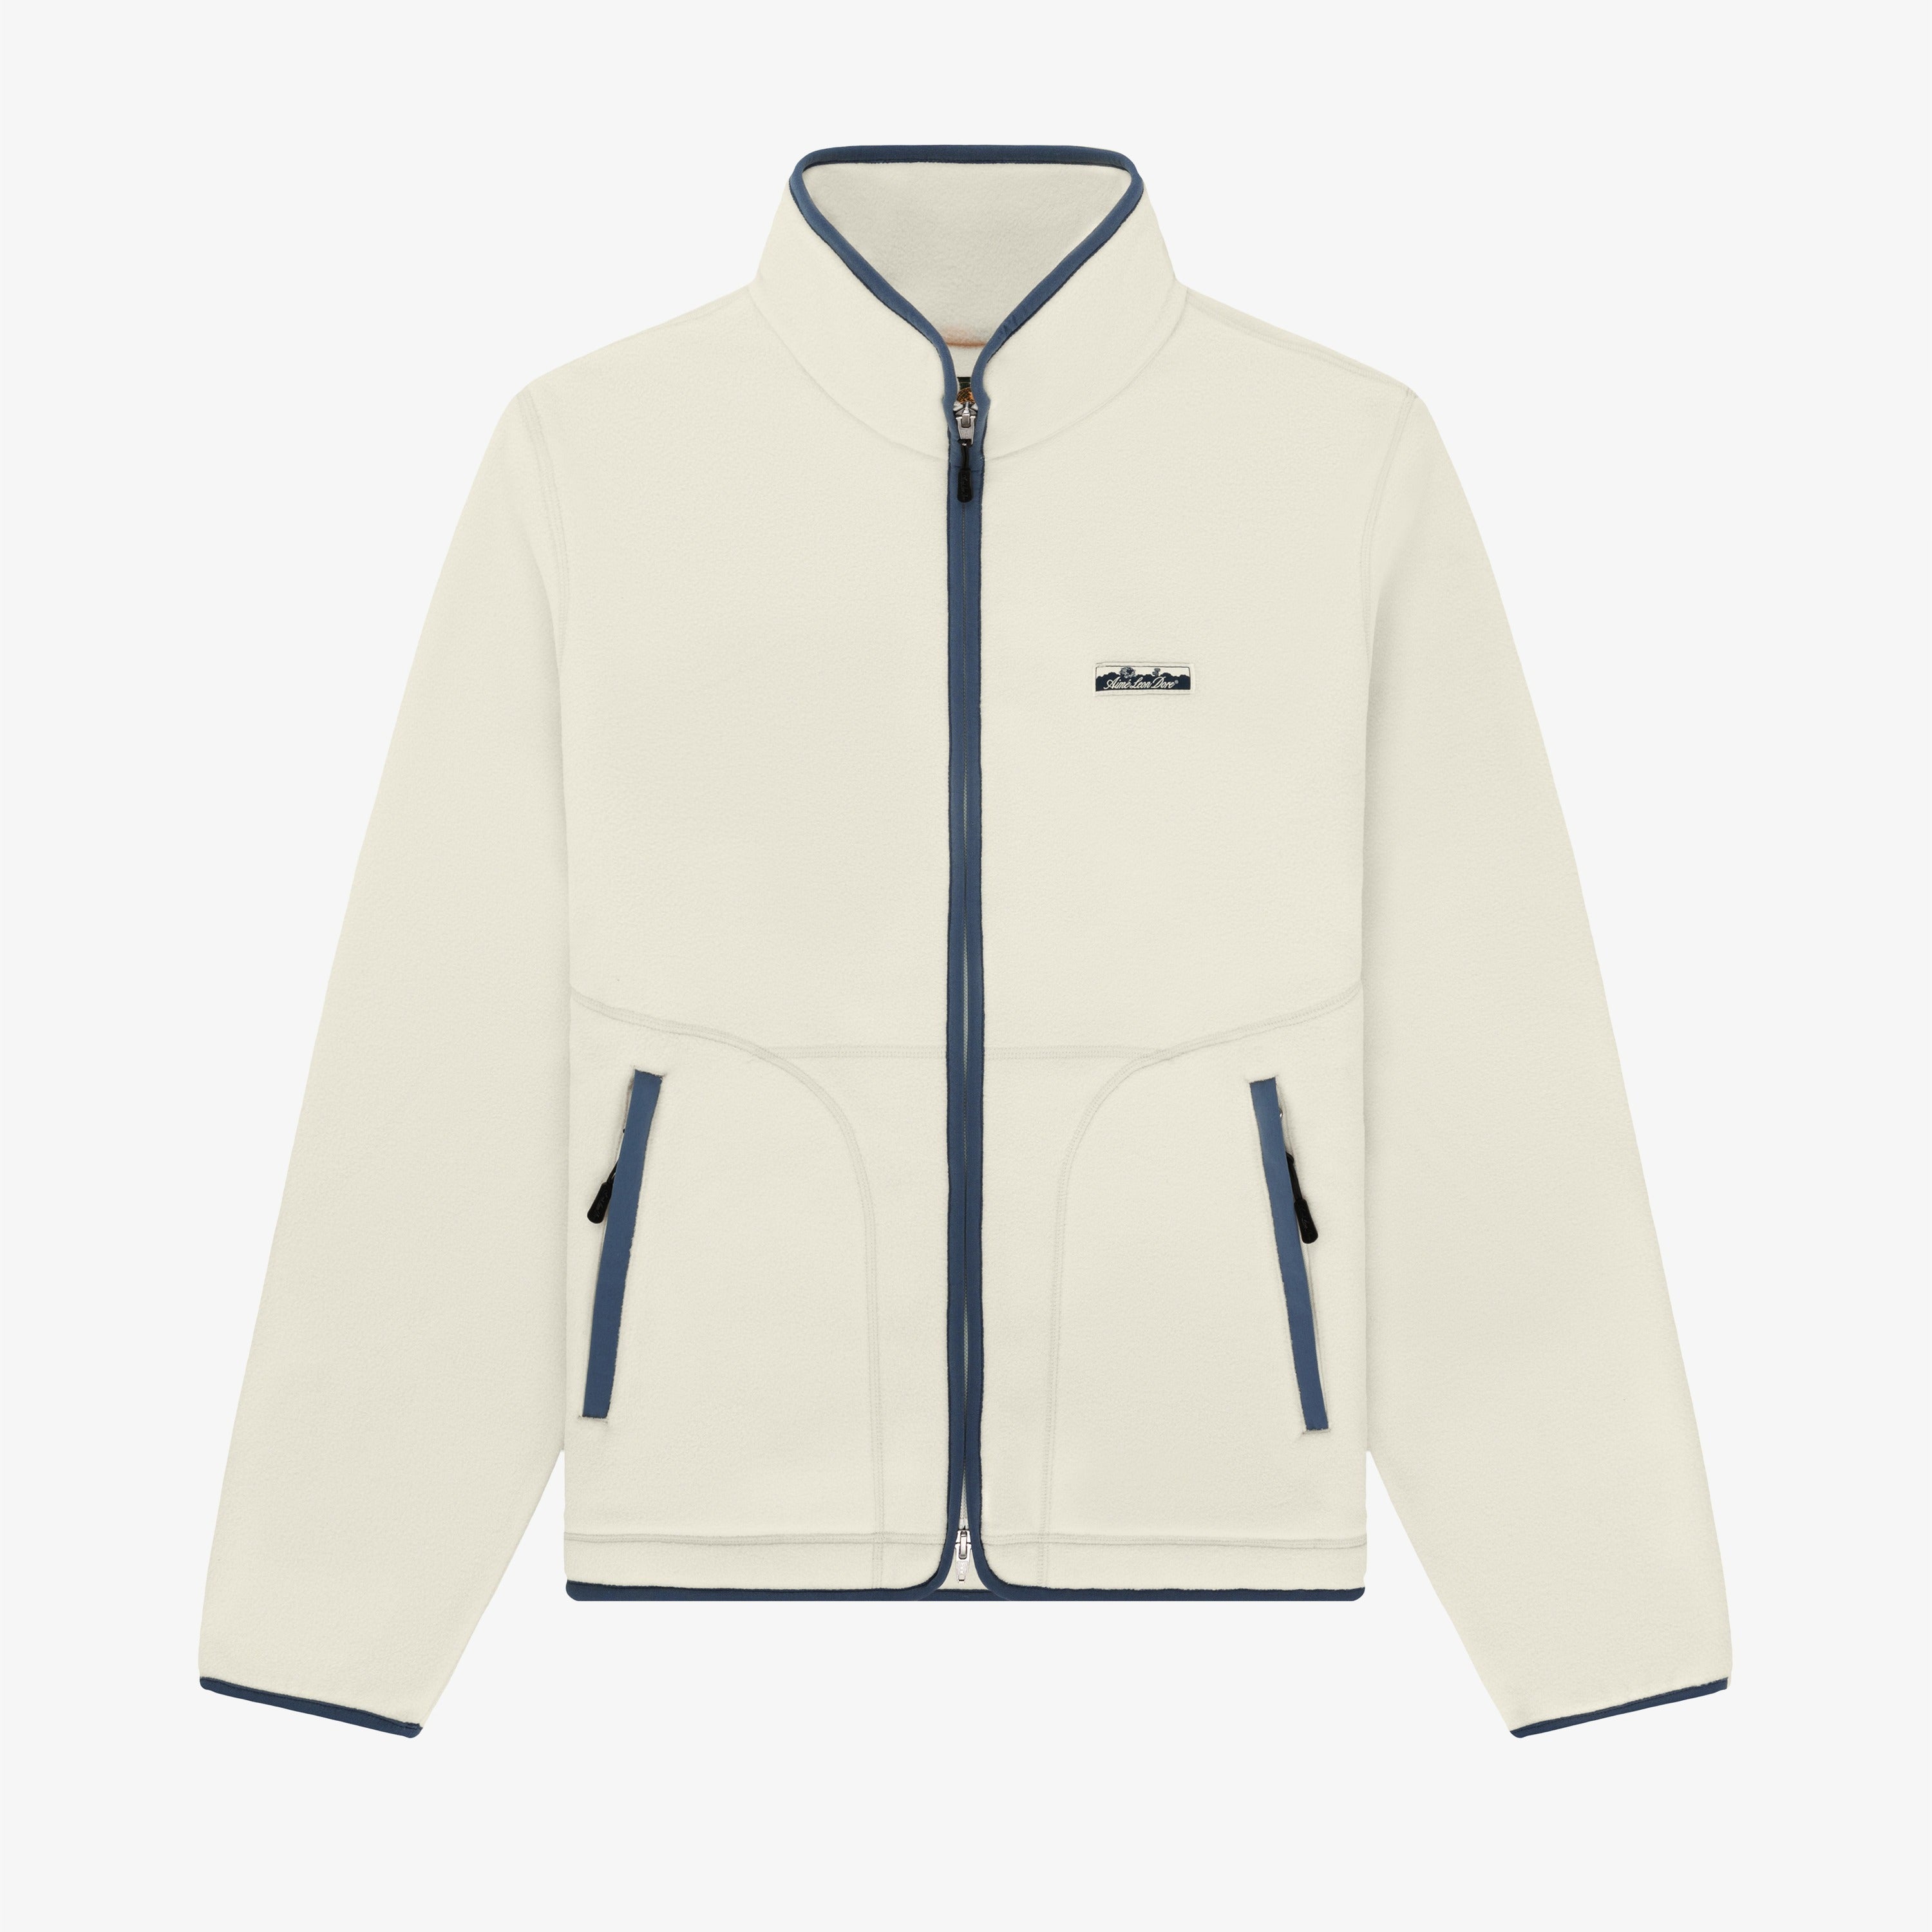 Lightweight Full-Zip Fleece Jacket